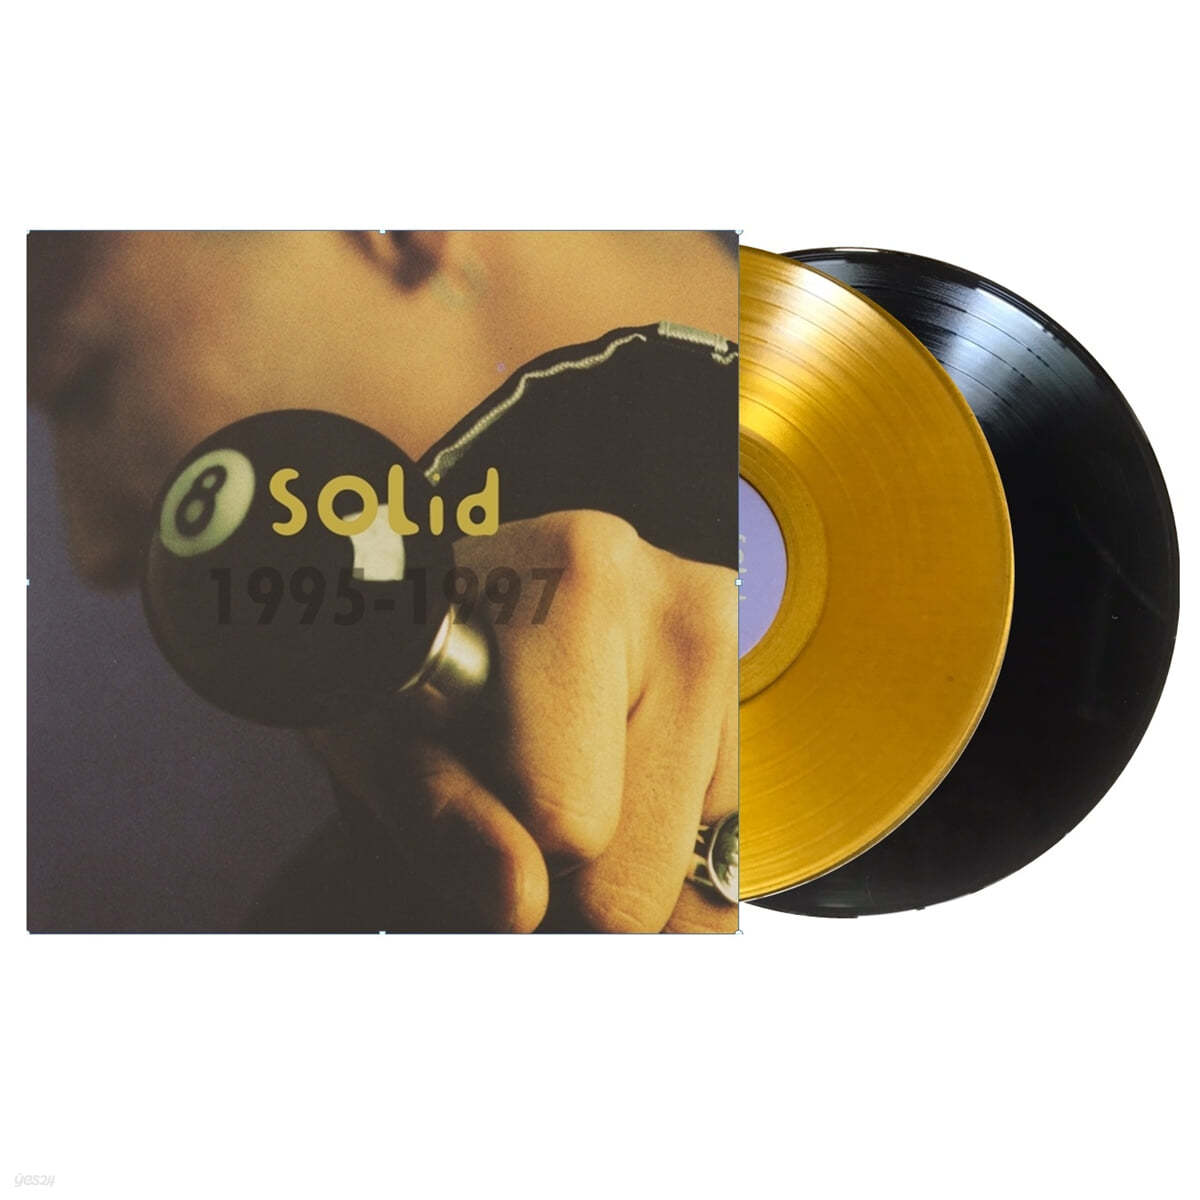 솔리드 - 2, 3, 4집 베스트 모음집 (1995-1997) [블랙 & 투명 옐로우 컬러 2LP] 